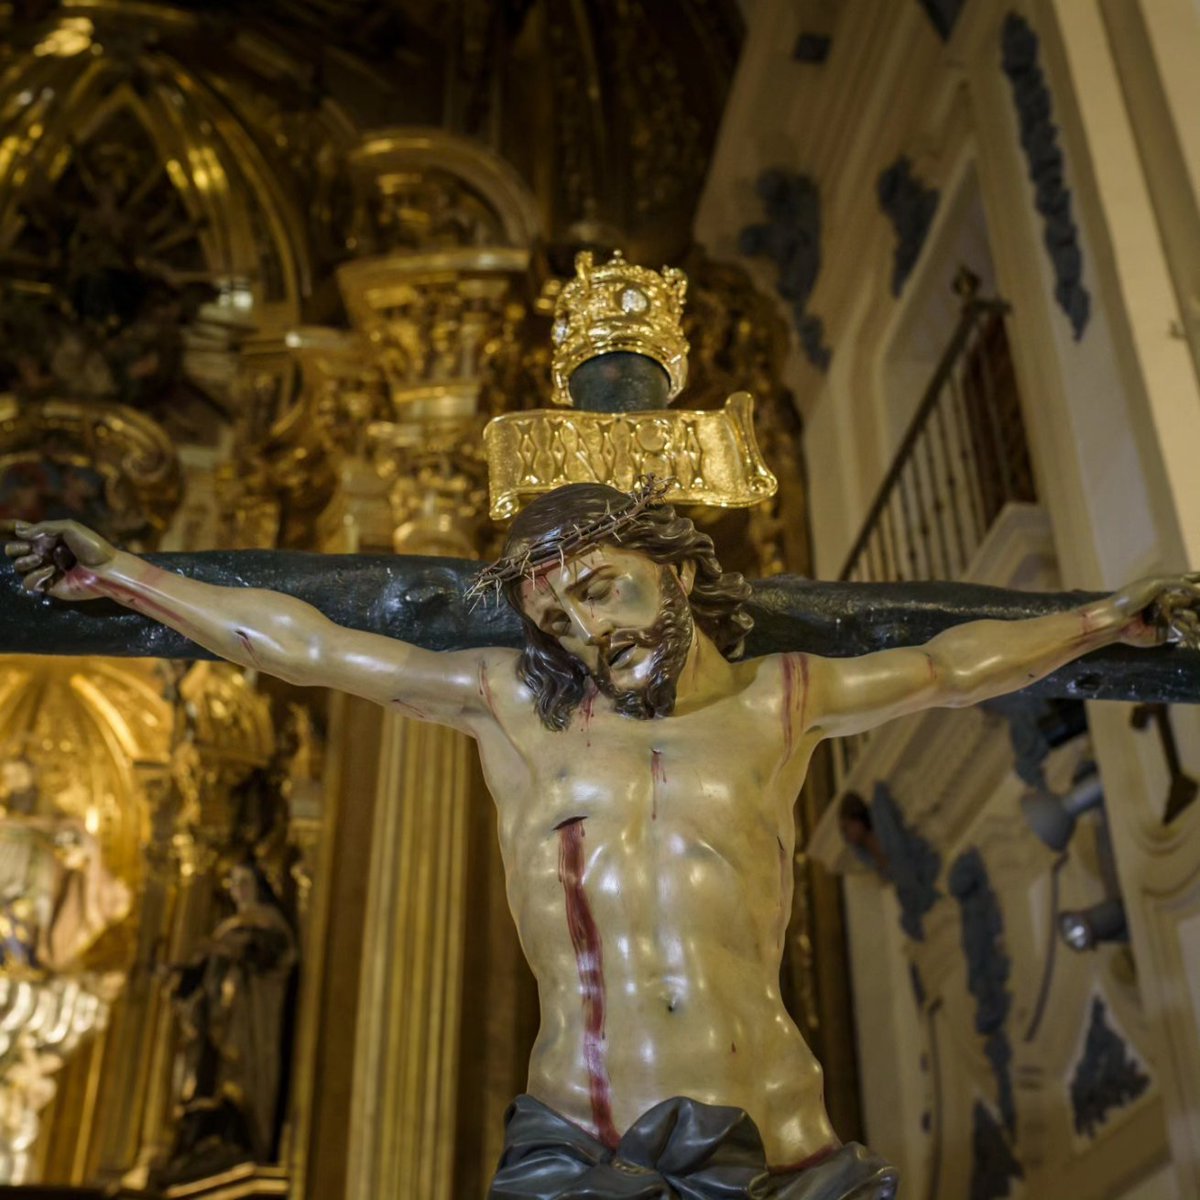 𝗦𝗢𝗟𝗘𝗠𝗡𝗘 𝗧𝗥𝗜𝗗𝗨𝗢 𝗘𝗡 𝗛𝗢𝗡𝗢𝗥 𝗔 𝗡𝗨𝗘𝗦𝗧𝗥𝗢𝗦 𝗧𝗜𝗧𝗨𝗟𝗔𝗥𝗘𝗦 🔹Viernes 8 de marzo a las 19:30h. 🔹Sábado 9 de marzo a las 19:30h. 🔹Domingo 10 de marzo a las 12:30h. 📍 Iglesia de San Nicolás de Bari, #Murcia. #SSantaMurcia #CuaresmaMurcia